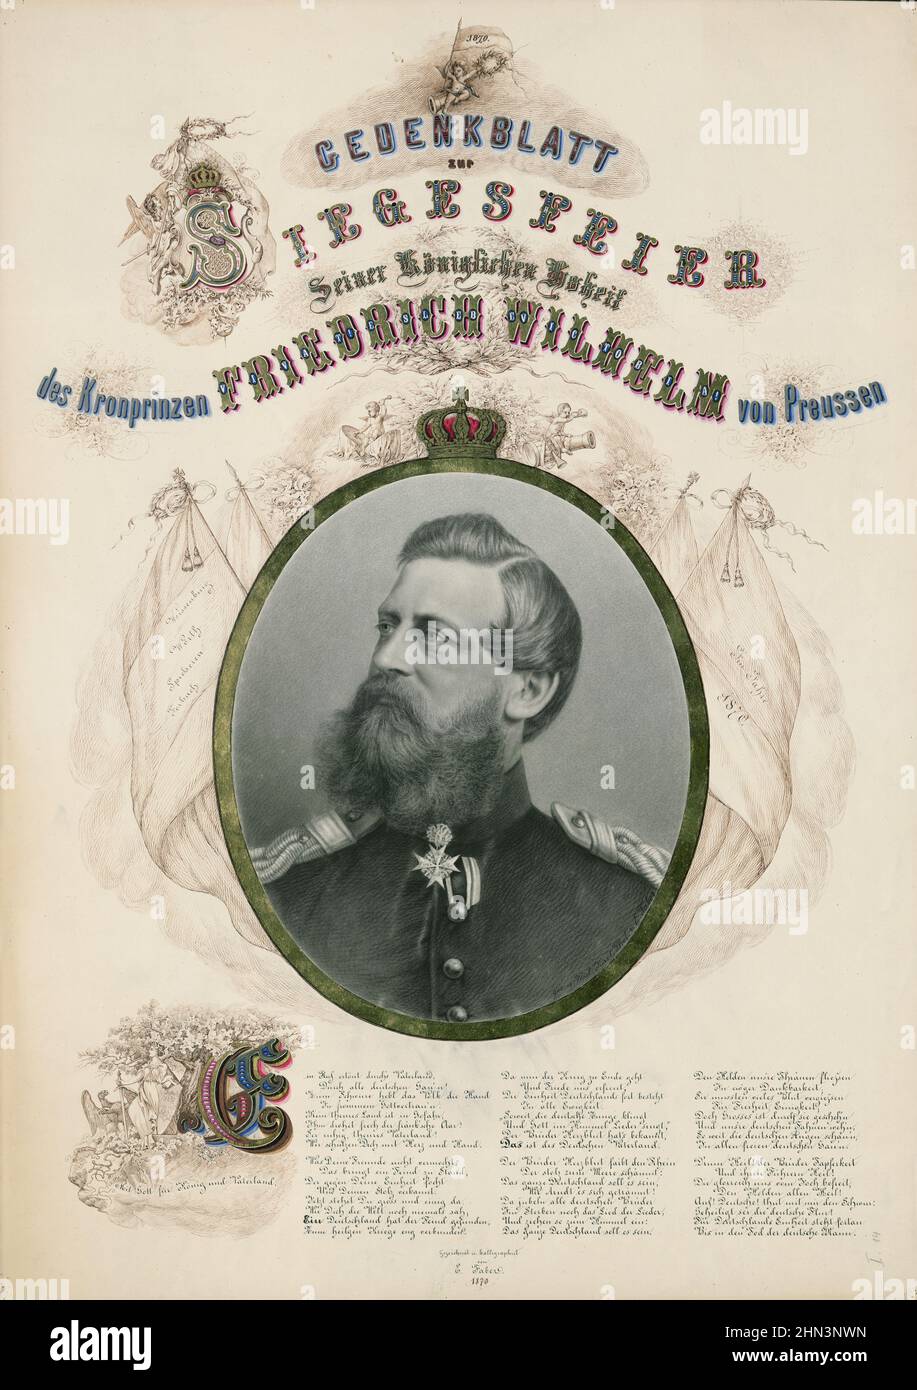 Gedenkblatt zum Sieg Festlichkeit seiner Königlichen Hoheit, Kronprinz Friedrich Wilhelm von Preußen : Vivat! Es lebe Victoria! 1870 Fre Stockfoto